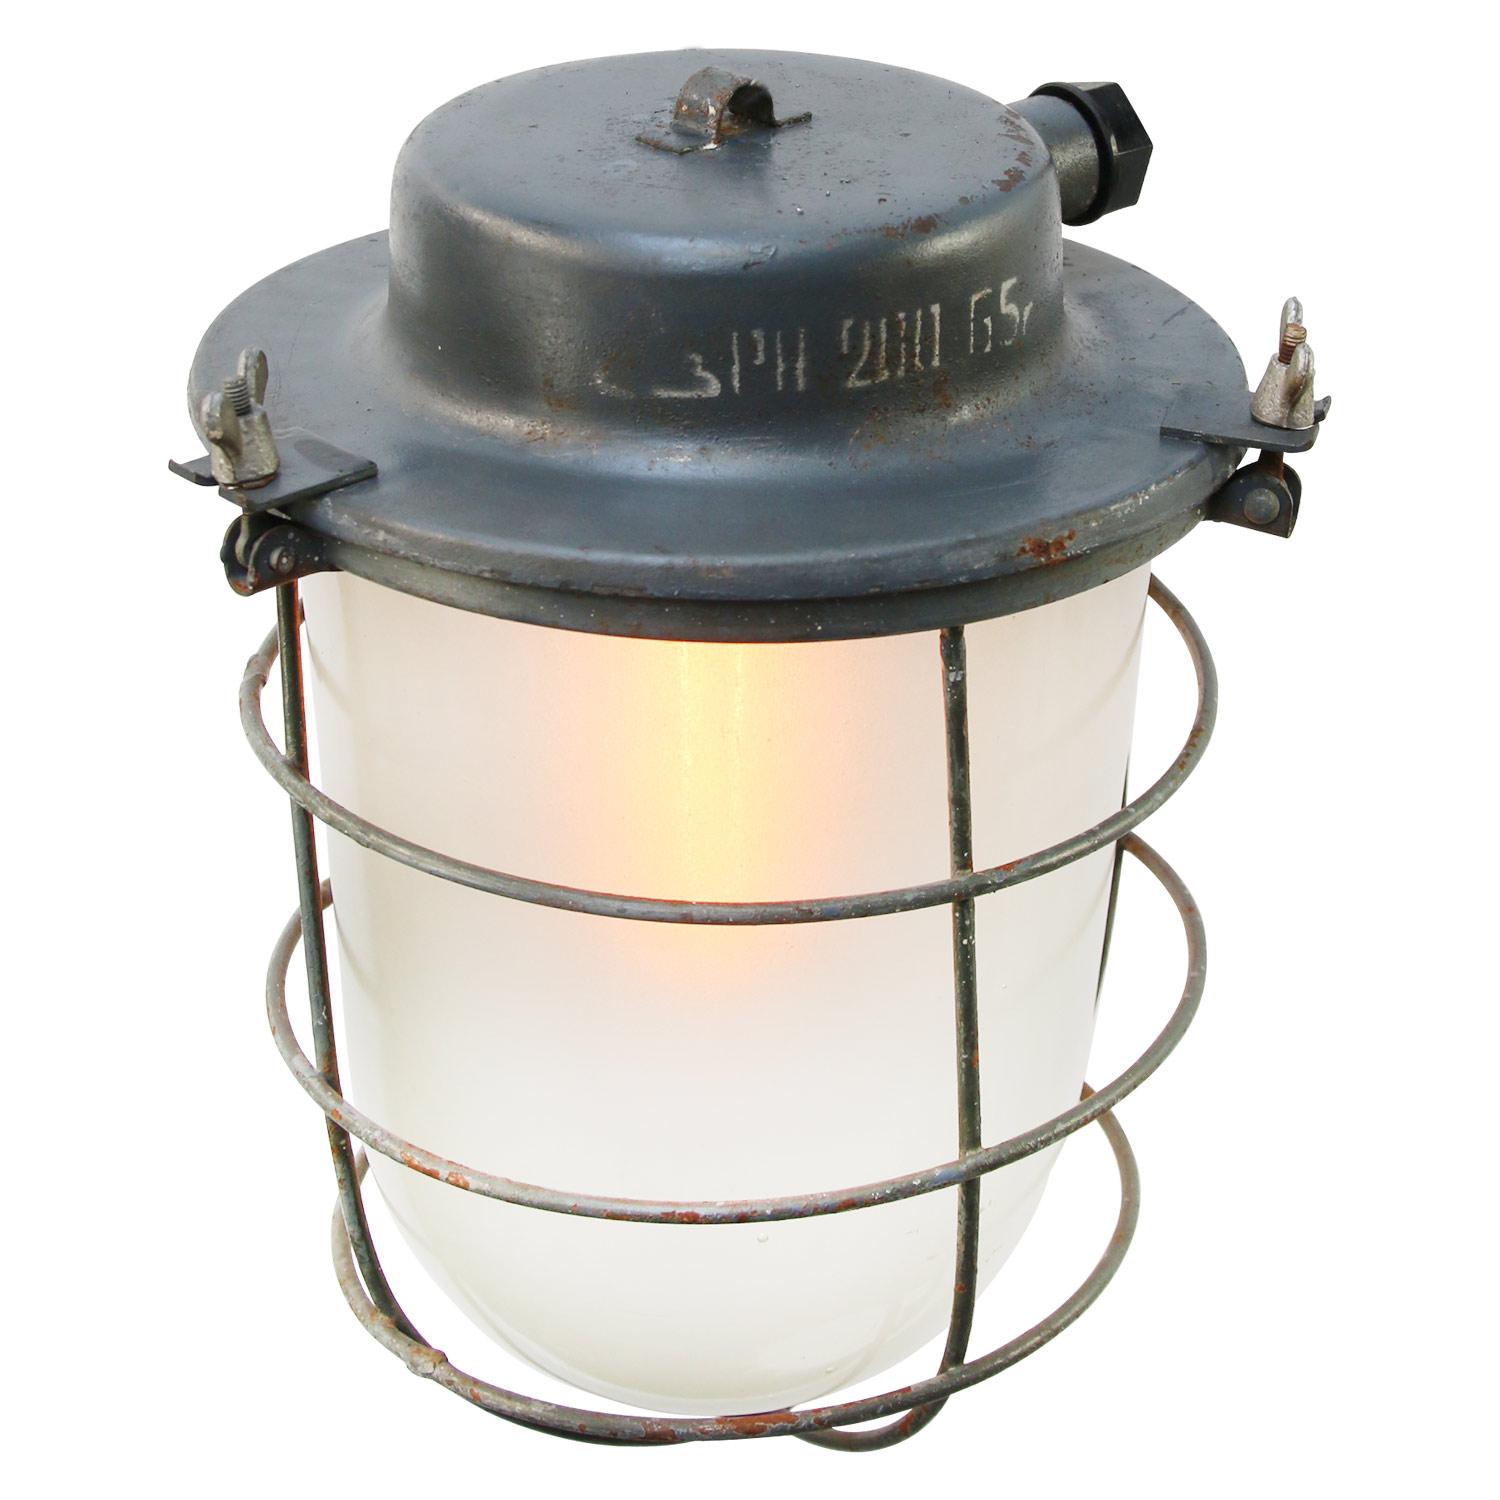 Lampe à suspension industrielle vintage
Verre transparent métallique bleu/gris

Poids : 4,00 kg

s pour une utilisation à l'extérieur comme à l'intérieur. 

Prix individuel par article. Toutes les lampes ont été fabriquées conformément aux normes